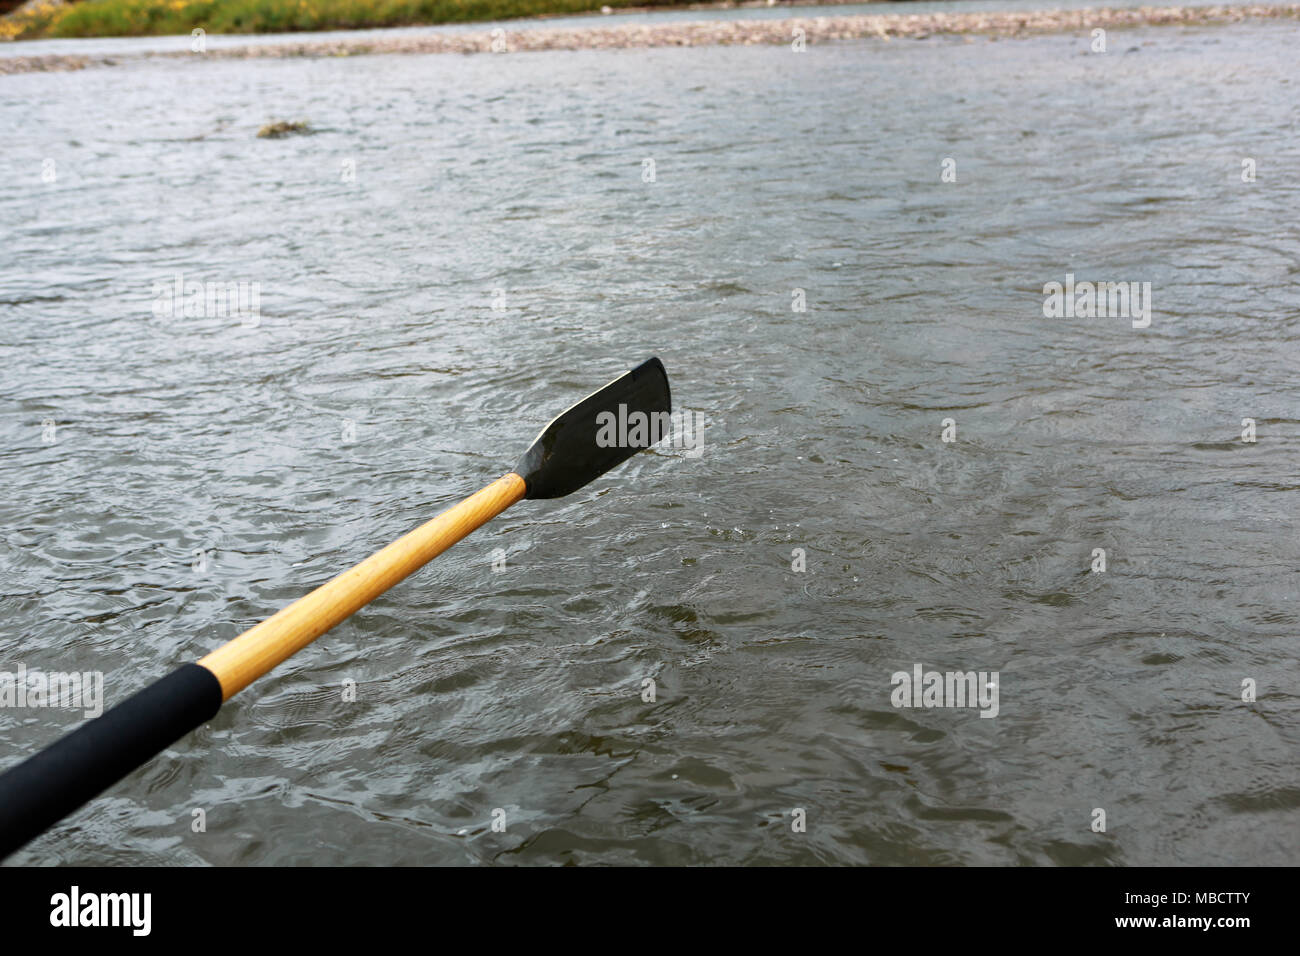 Nahaufnahme eines oar über der Oberfläche des Wassers erhöht während einer rudern Strich von einem kleinen Boot auf einem Fluss oder See gesehen Stockfoto